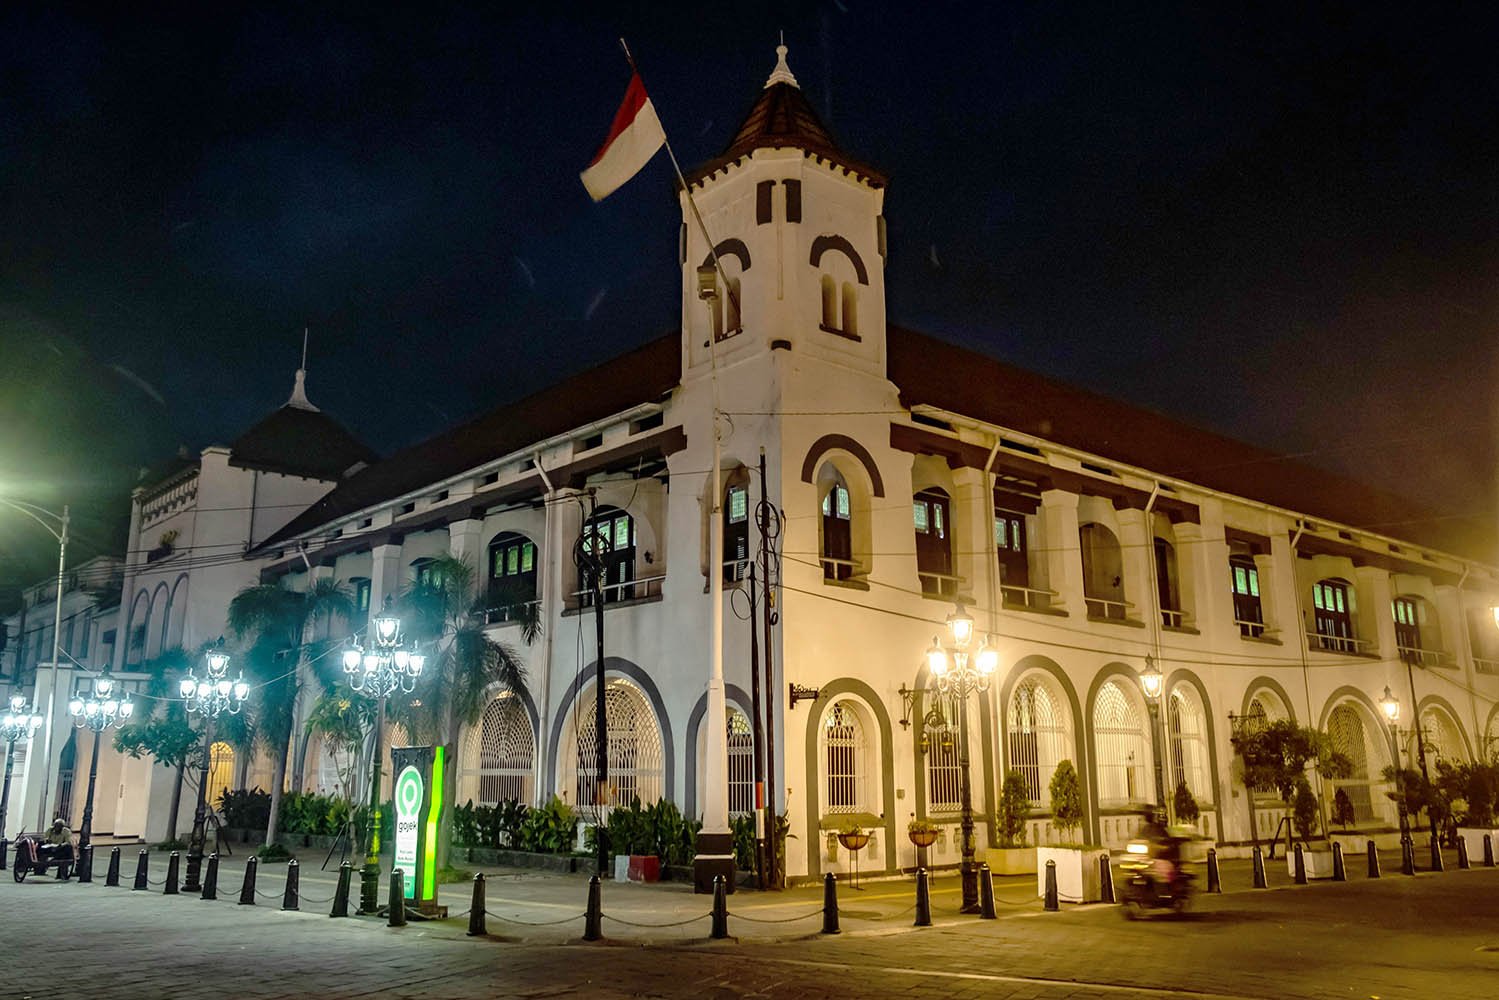 Suasana di sekitar gedung eks-perusahaan dagang Nederlandsche Handel Maatschappij (NHM) yang sepi saat menjelang senja di Kawasan Kota Lama Semarang, Jawa Tengah, Jumat (17/4/2020). 